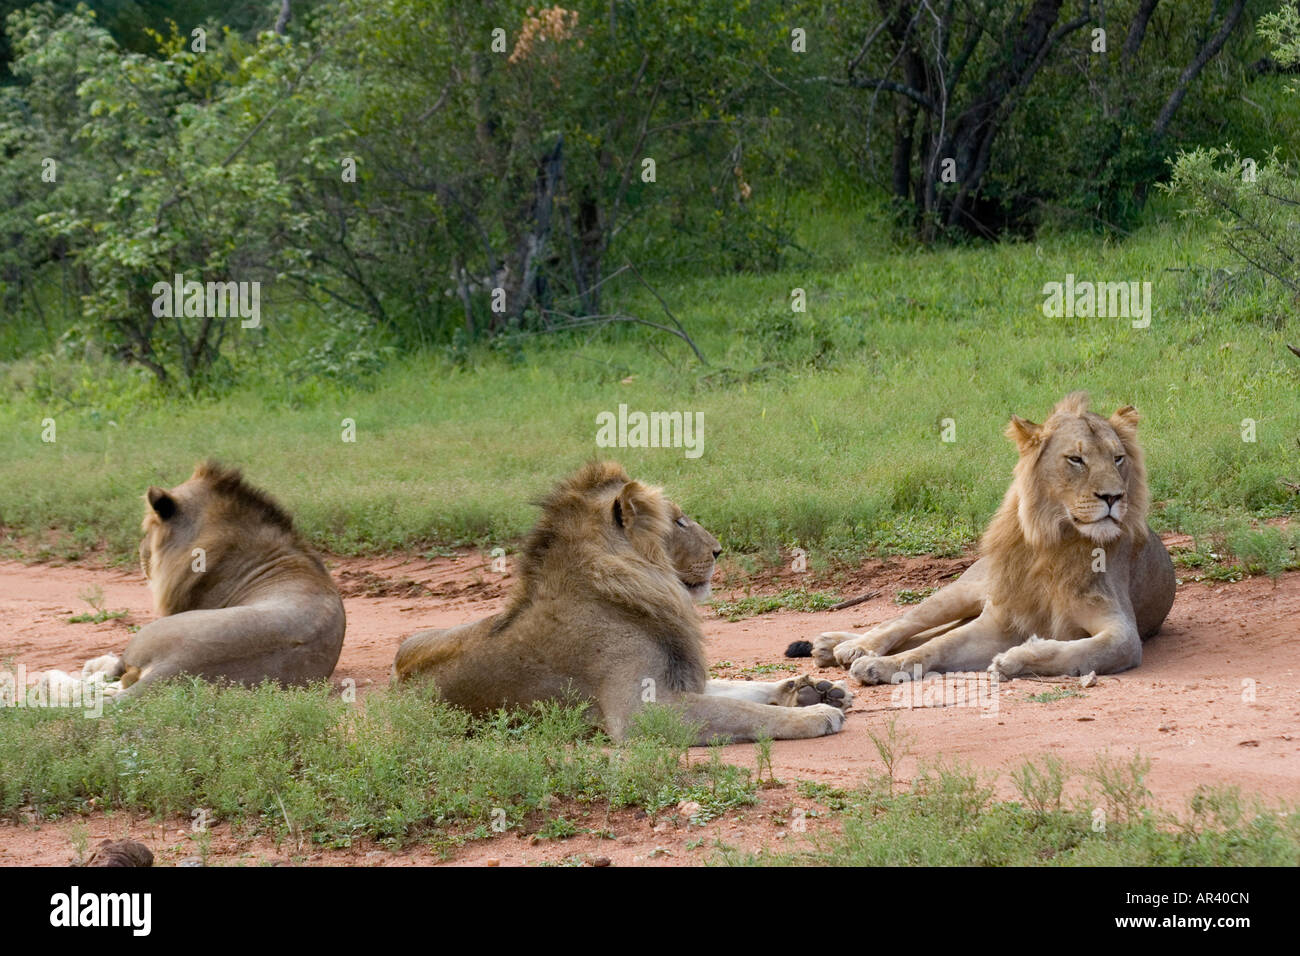 Löwen verbringen die meiste Zeit ruhen oder schlafen, um Energie zu sparen, männliche Löwen können Reisen zusammen und verbinden einen stolz der Frauen Stockfoto